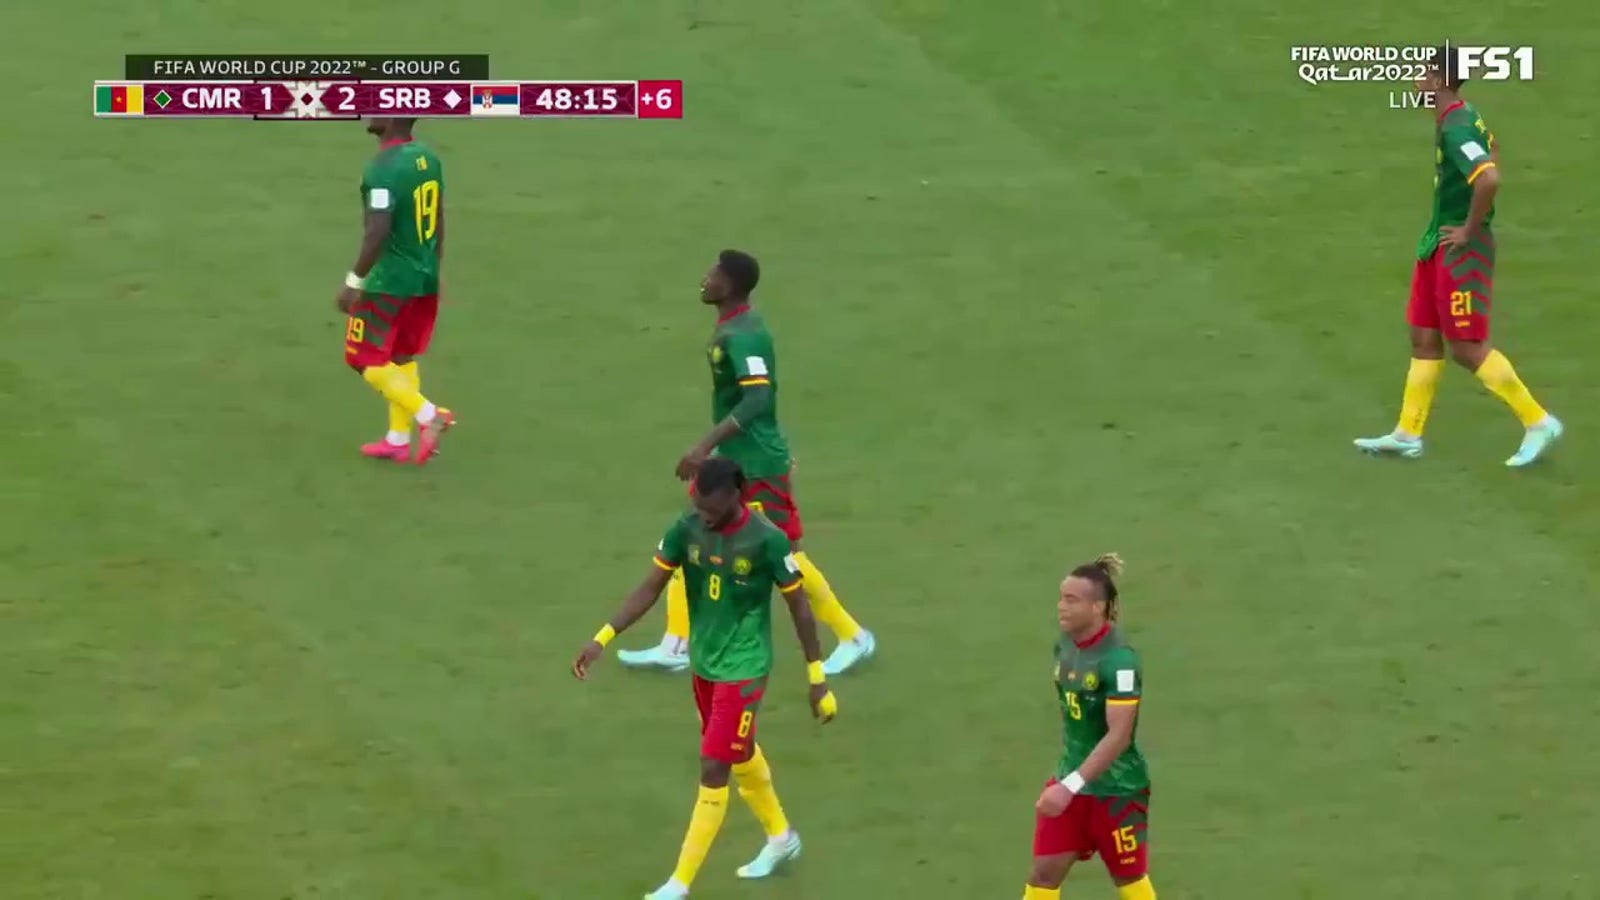 Serbia's Sergej Milinkovic-Savic scores goal vs. Cameroon in 45+3'